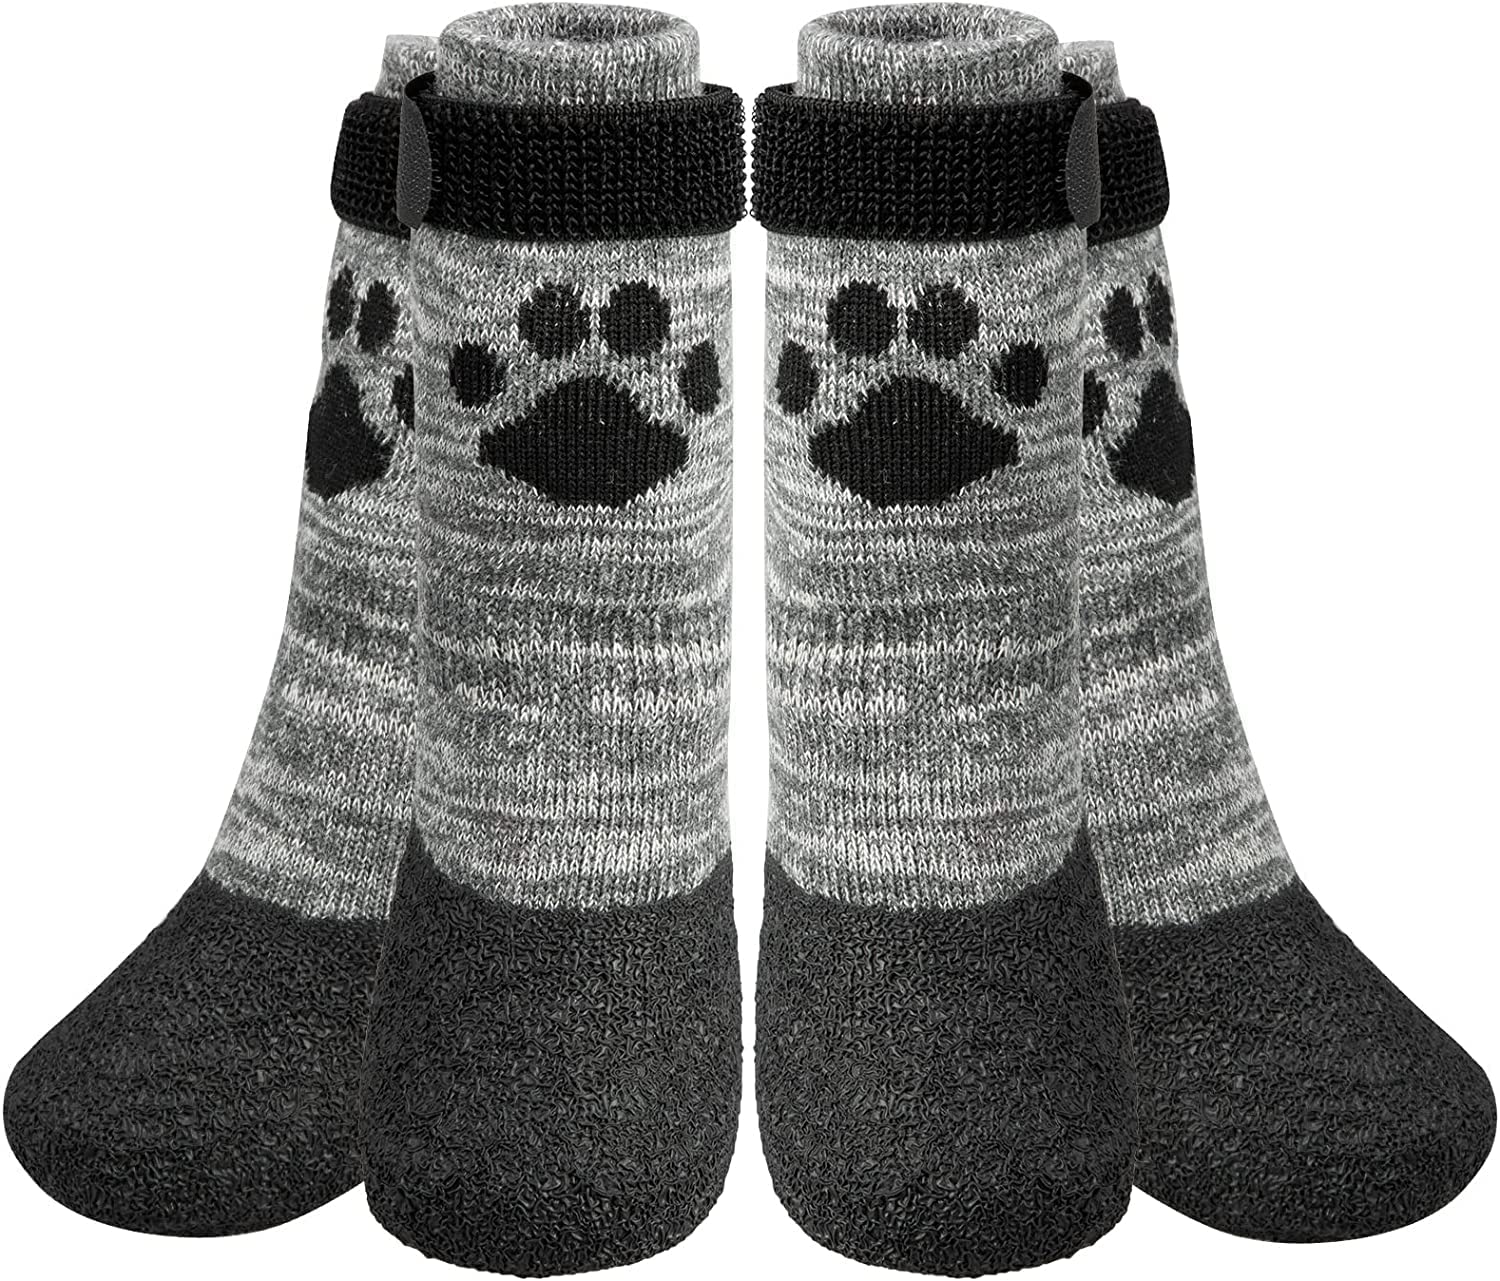 4. KOOLTAIL Anti Slip Dog Socks